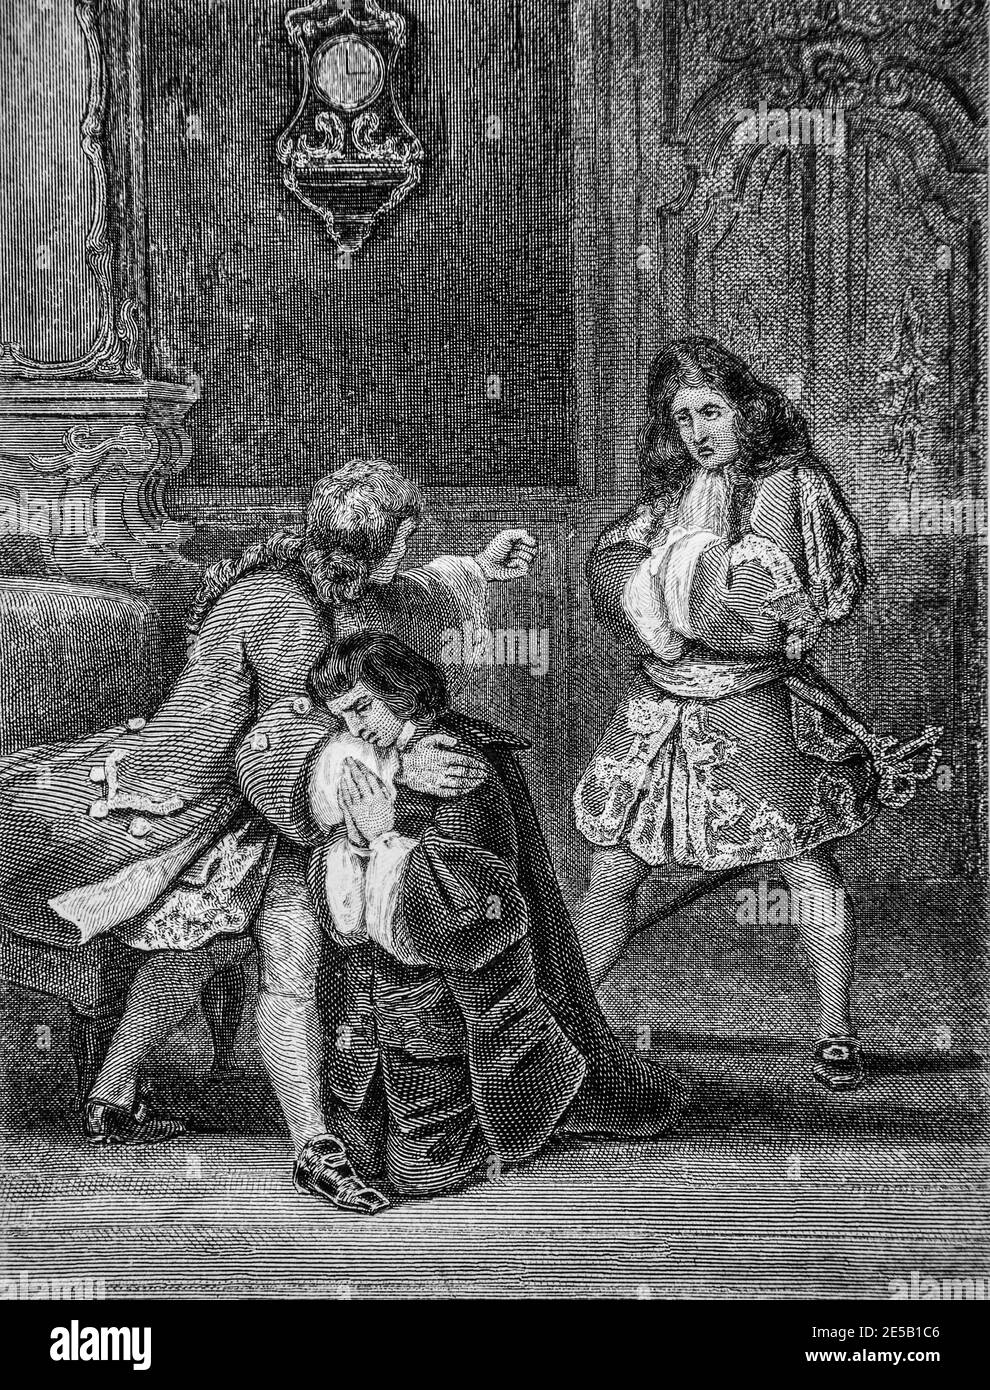 l'avare, theatre de moliere 1620-1673 ,editeur furne-combet 1860 Stock Photo